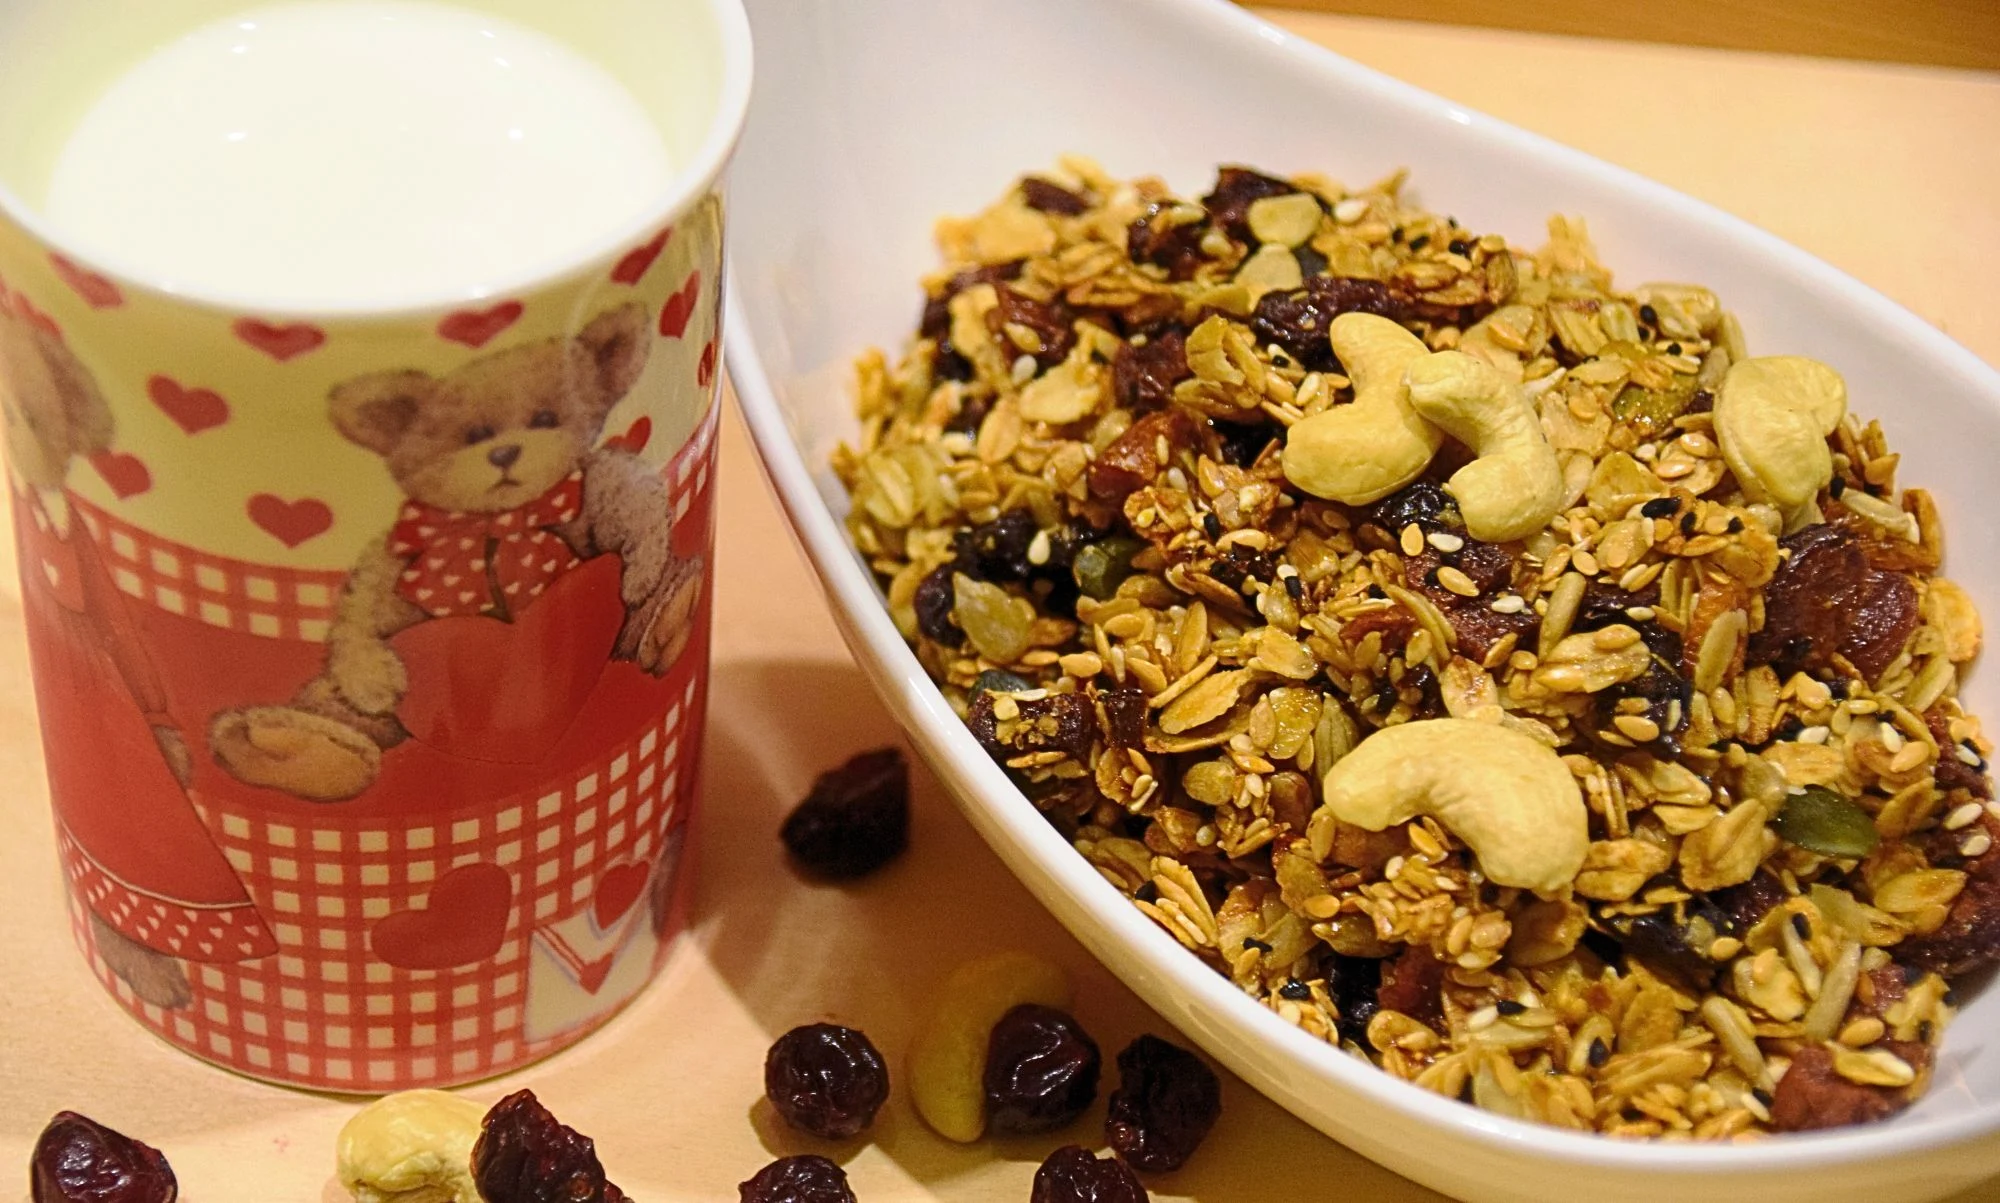 Jeśli nie masz czasu rano na zrobienie śniadania, przygotuj je wieczorem. Co powiesz na zdrową owsiankę "wieczorną" z własnoręcznie zrobionej granoli?